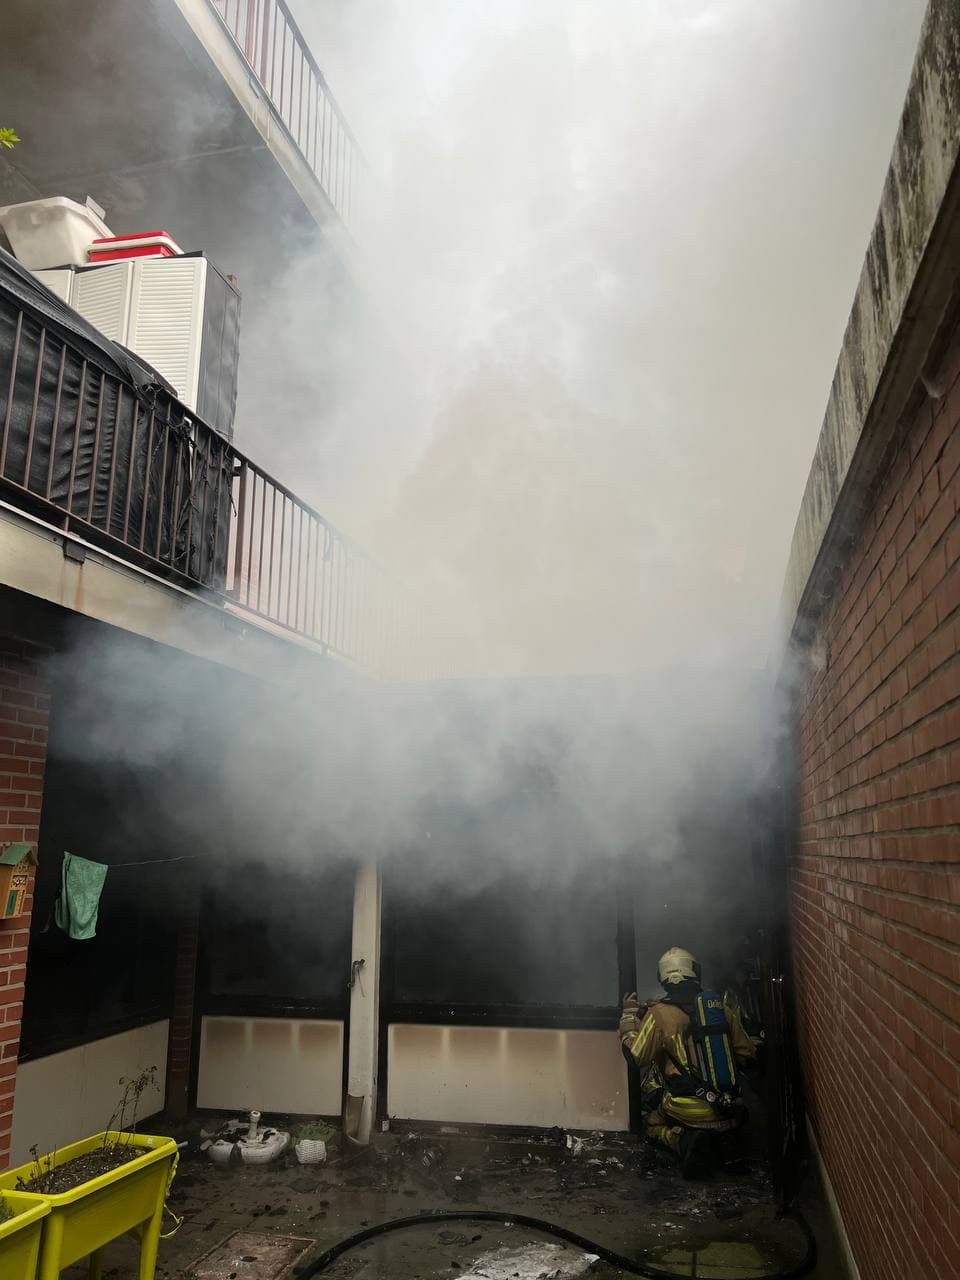 Incendie dans la conciergerie d’un bloc d’appartements à Ganshoren (23-11-2021 + photos) Whats315